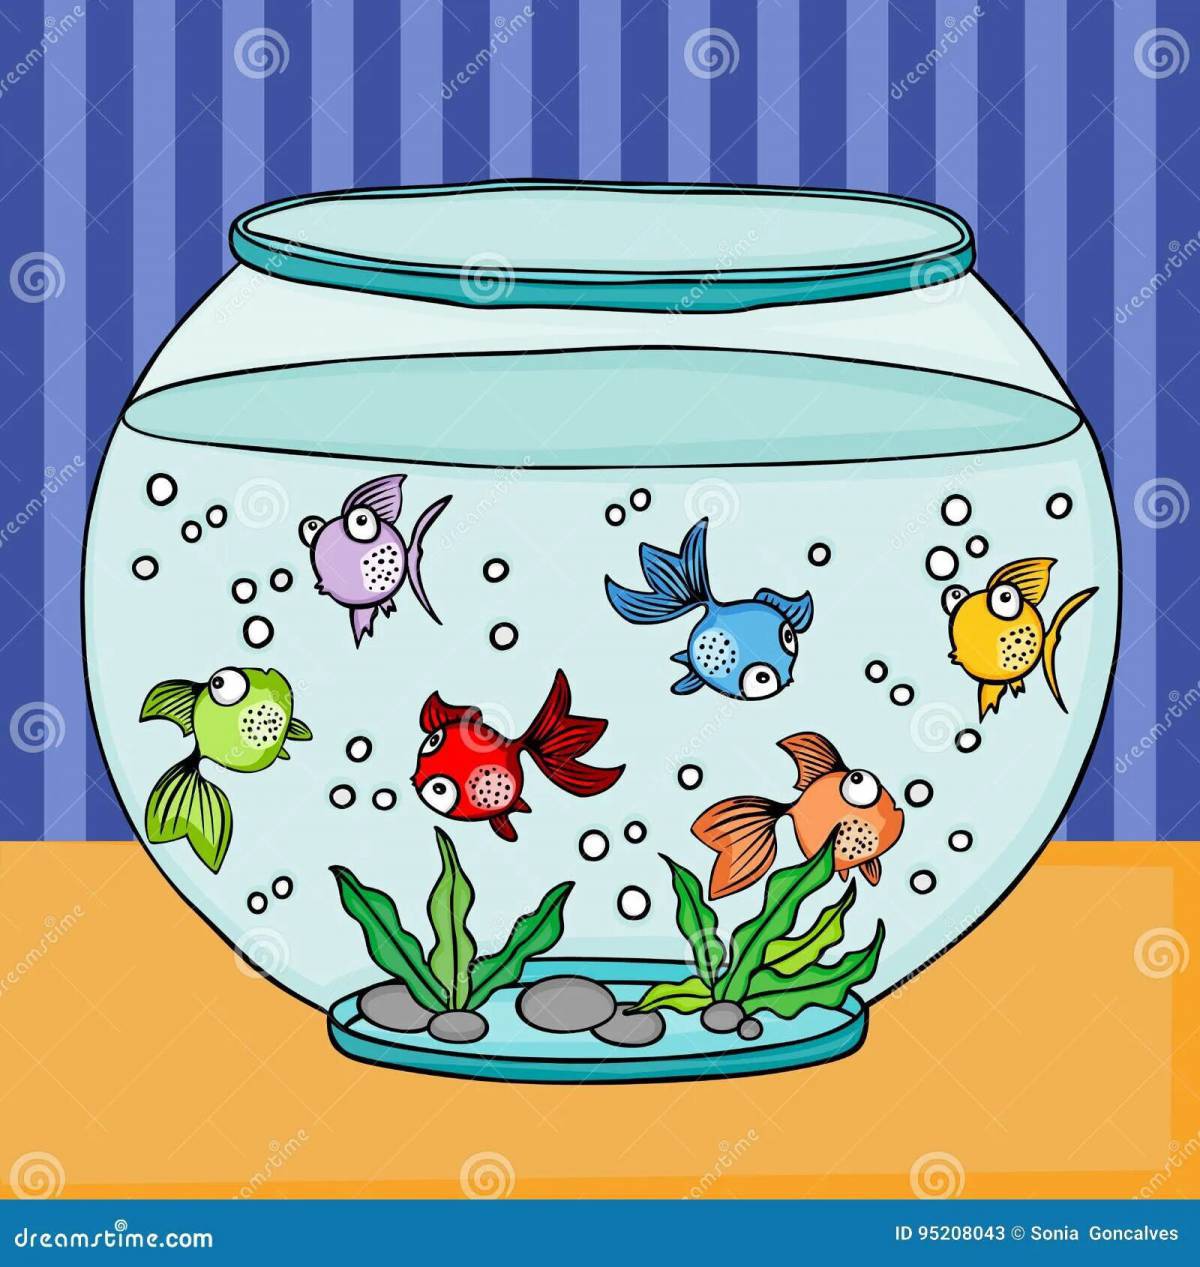 Рыбки в аквариуме для детей 4 5 лет #26